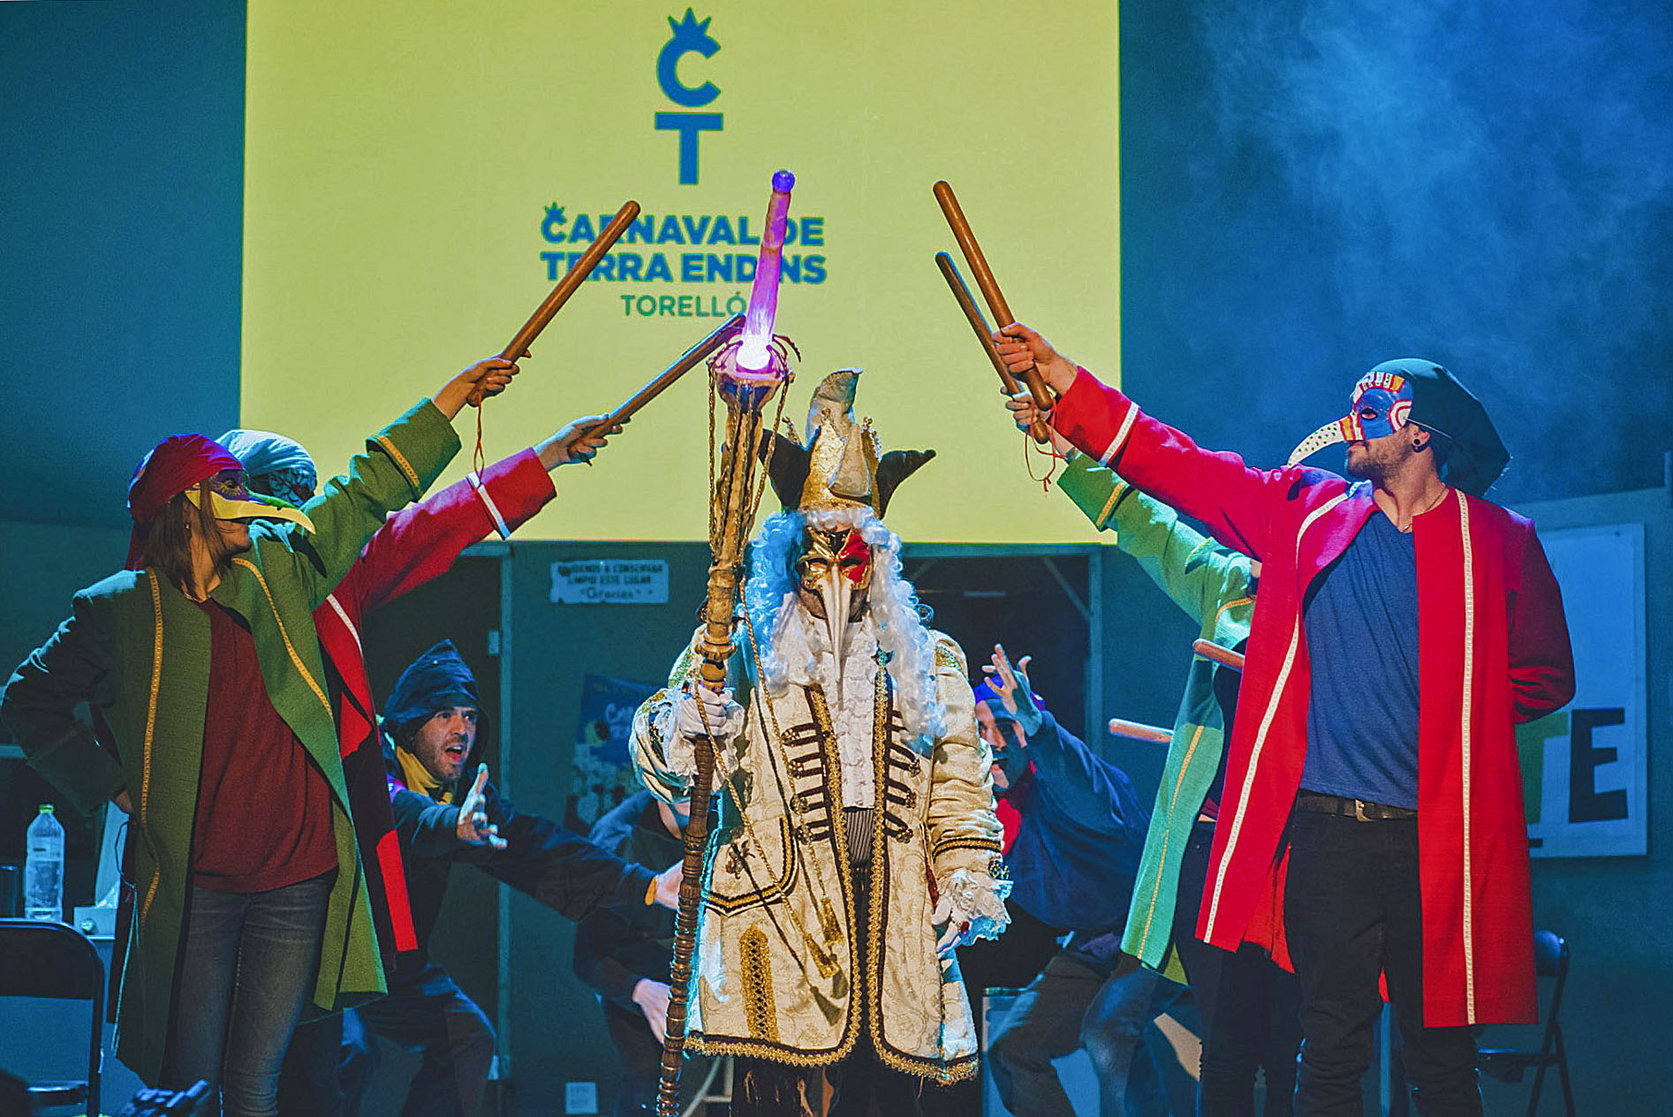 Aquest dijous comença el gruix d'actes destacats del 39è Carnaval de Terra Endins